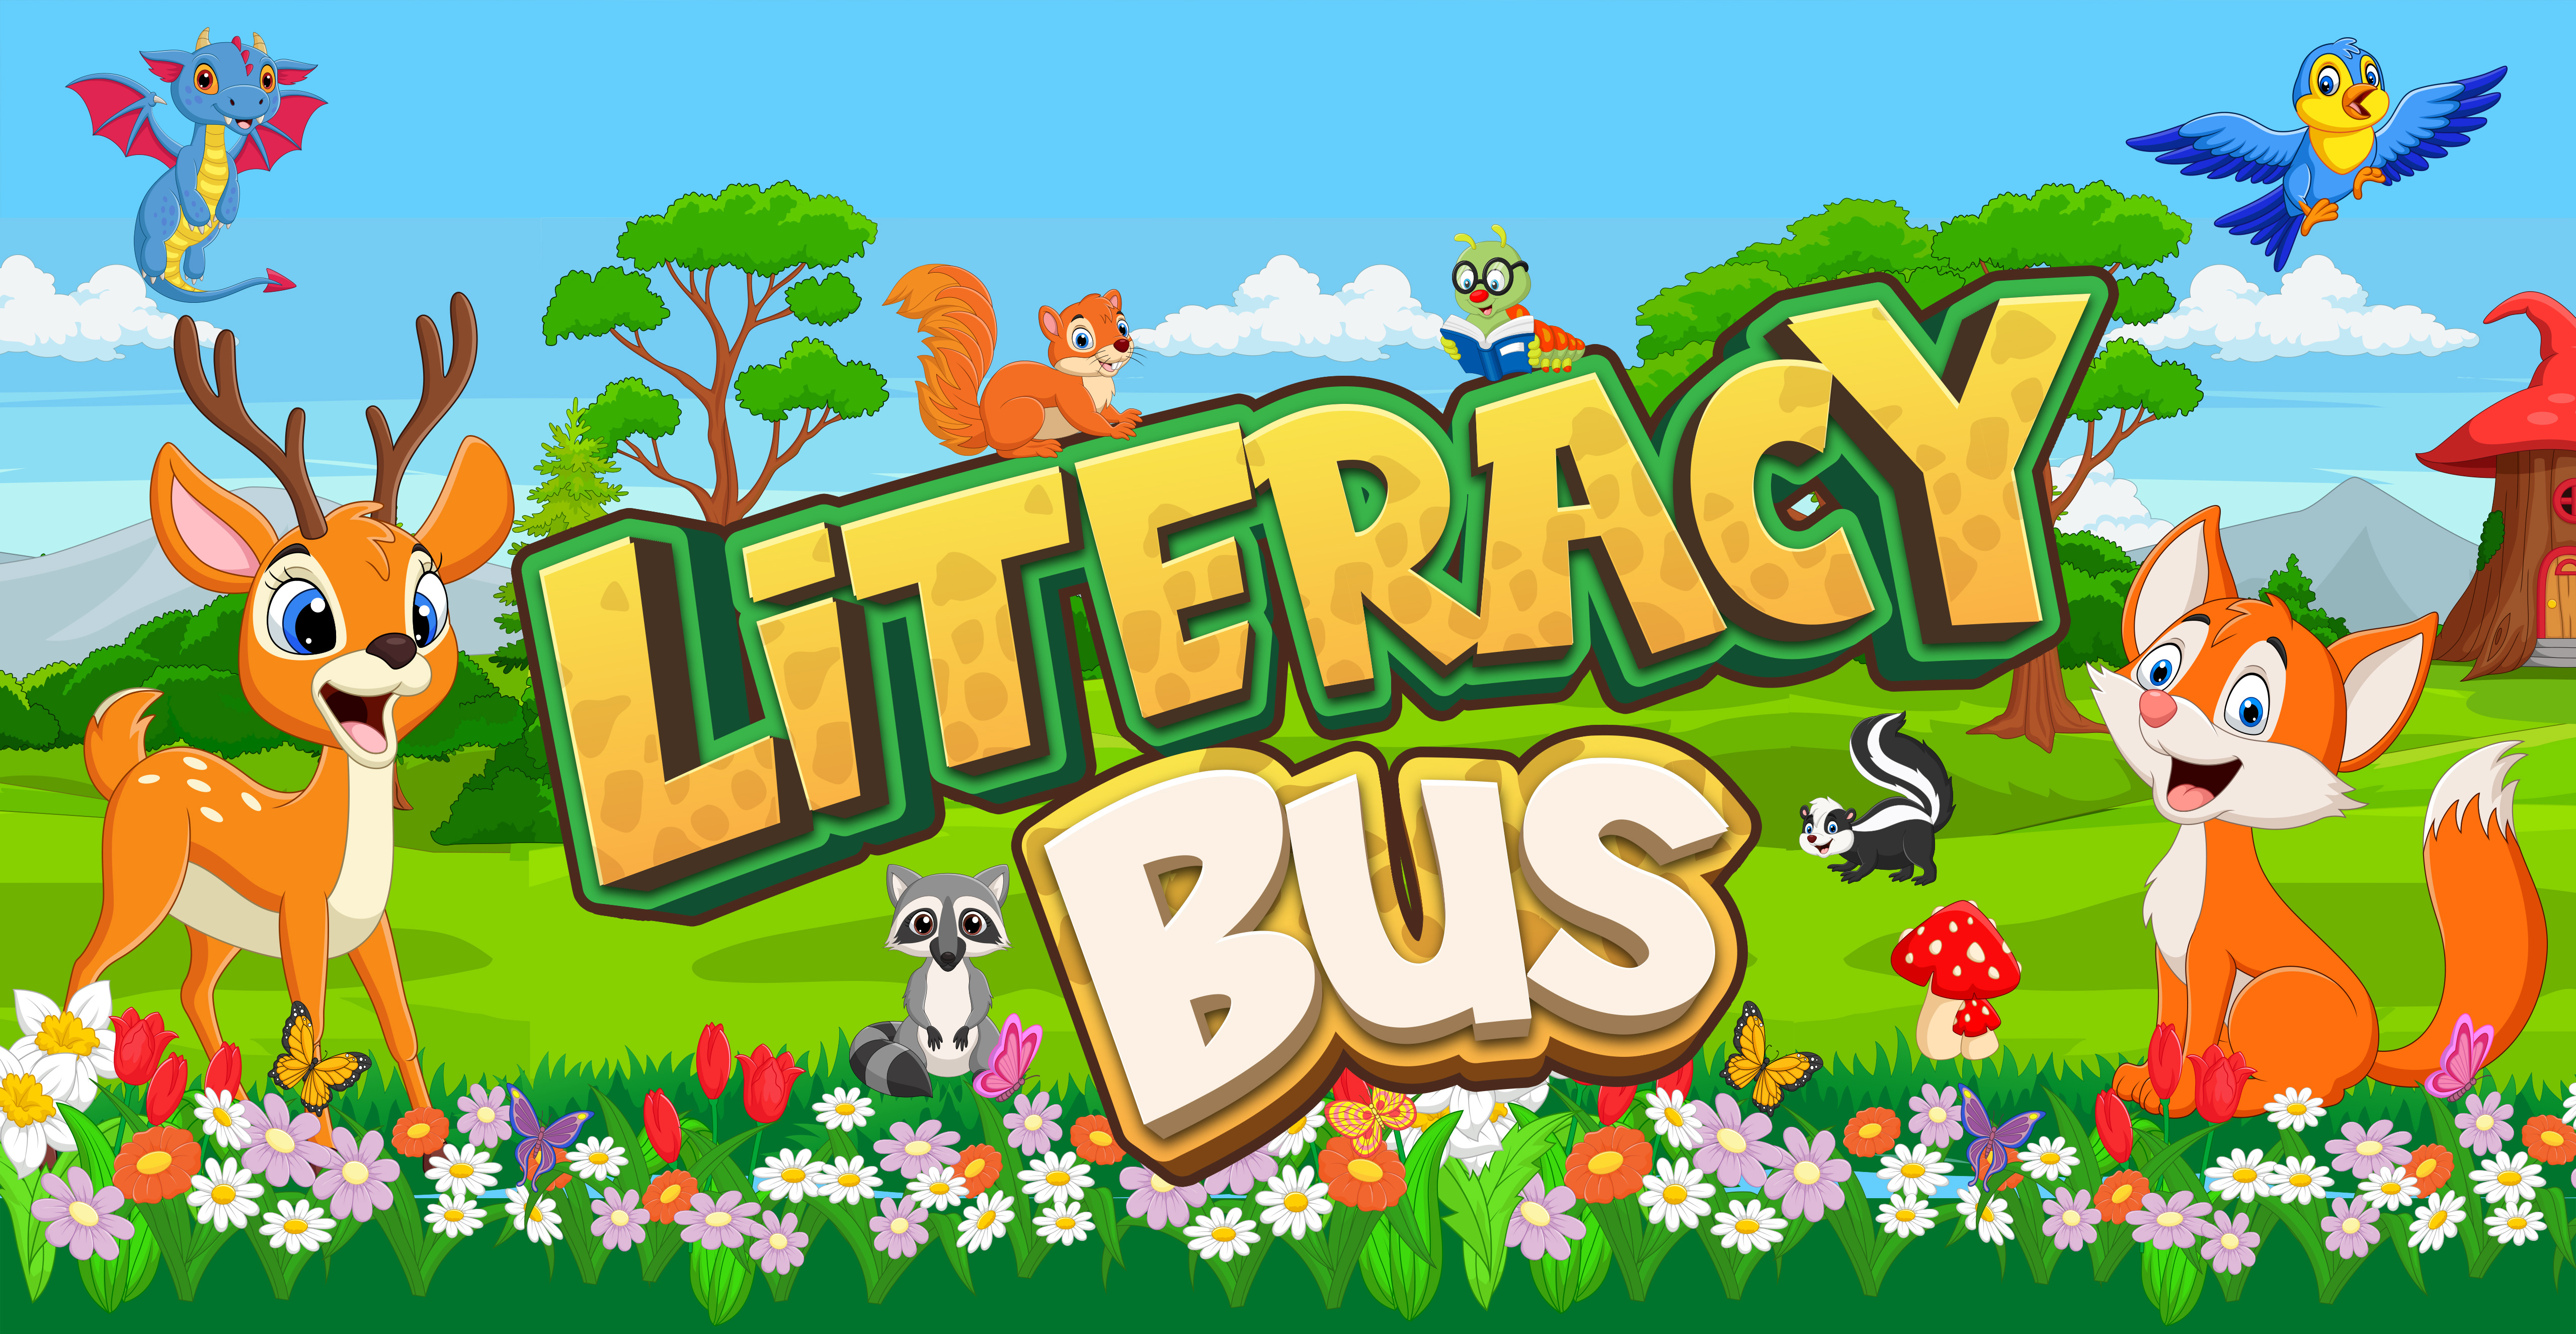 Literacy Bus - background with flowers, blue skies, deer, birds, fox, skunk